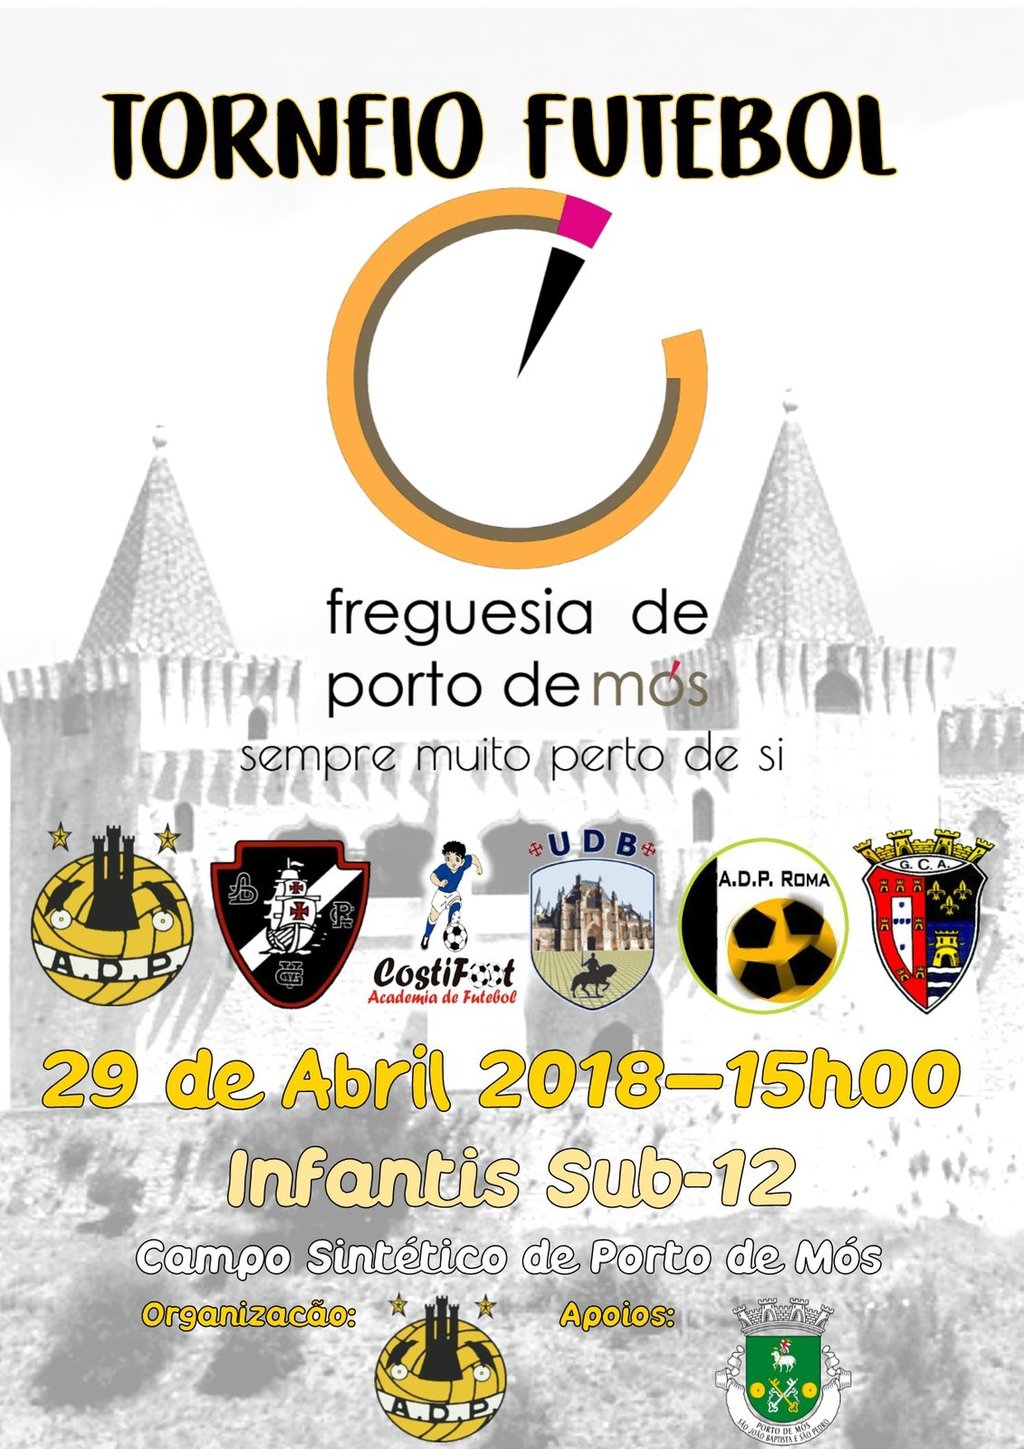 Torneio de Futebol da Freguesia de Porto de Mós